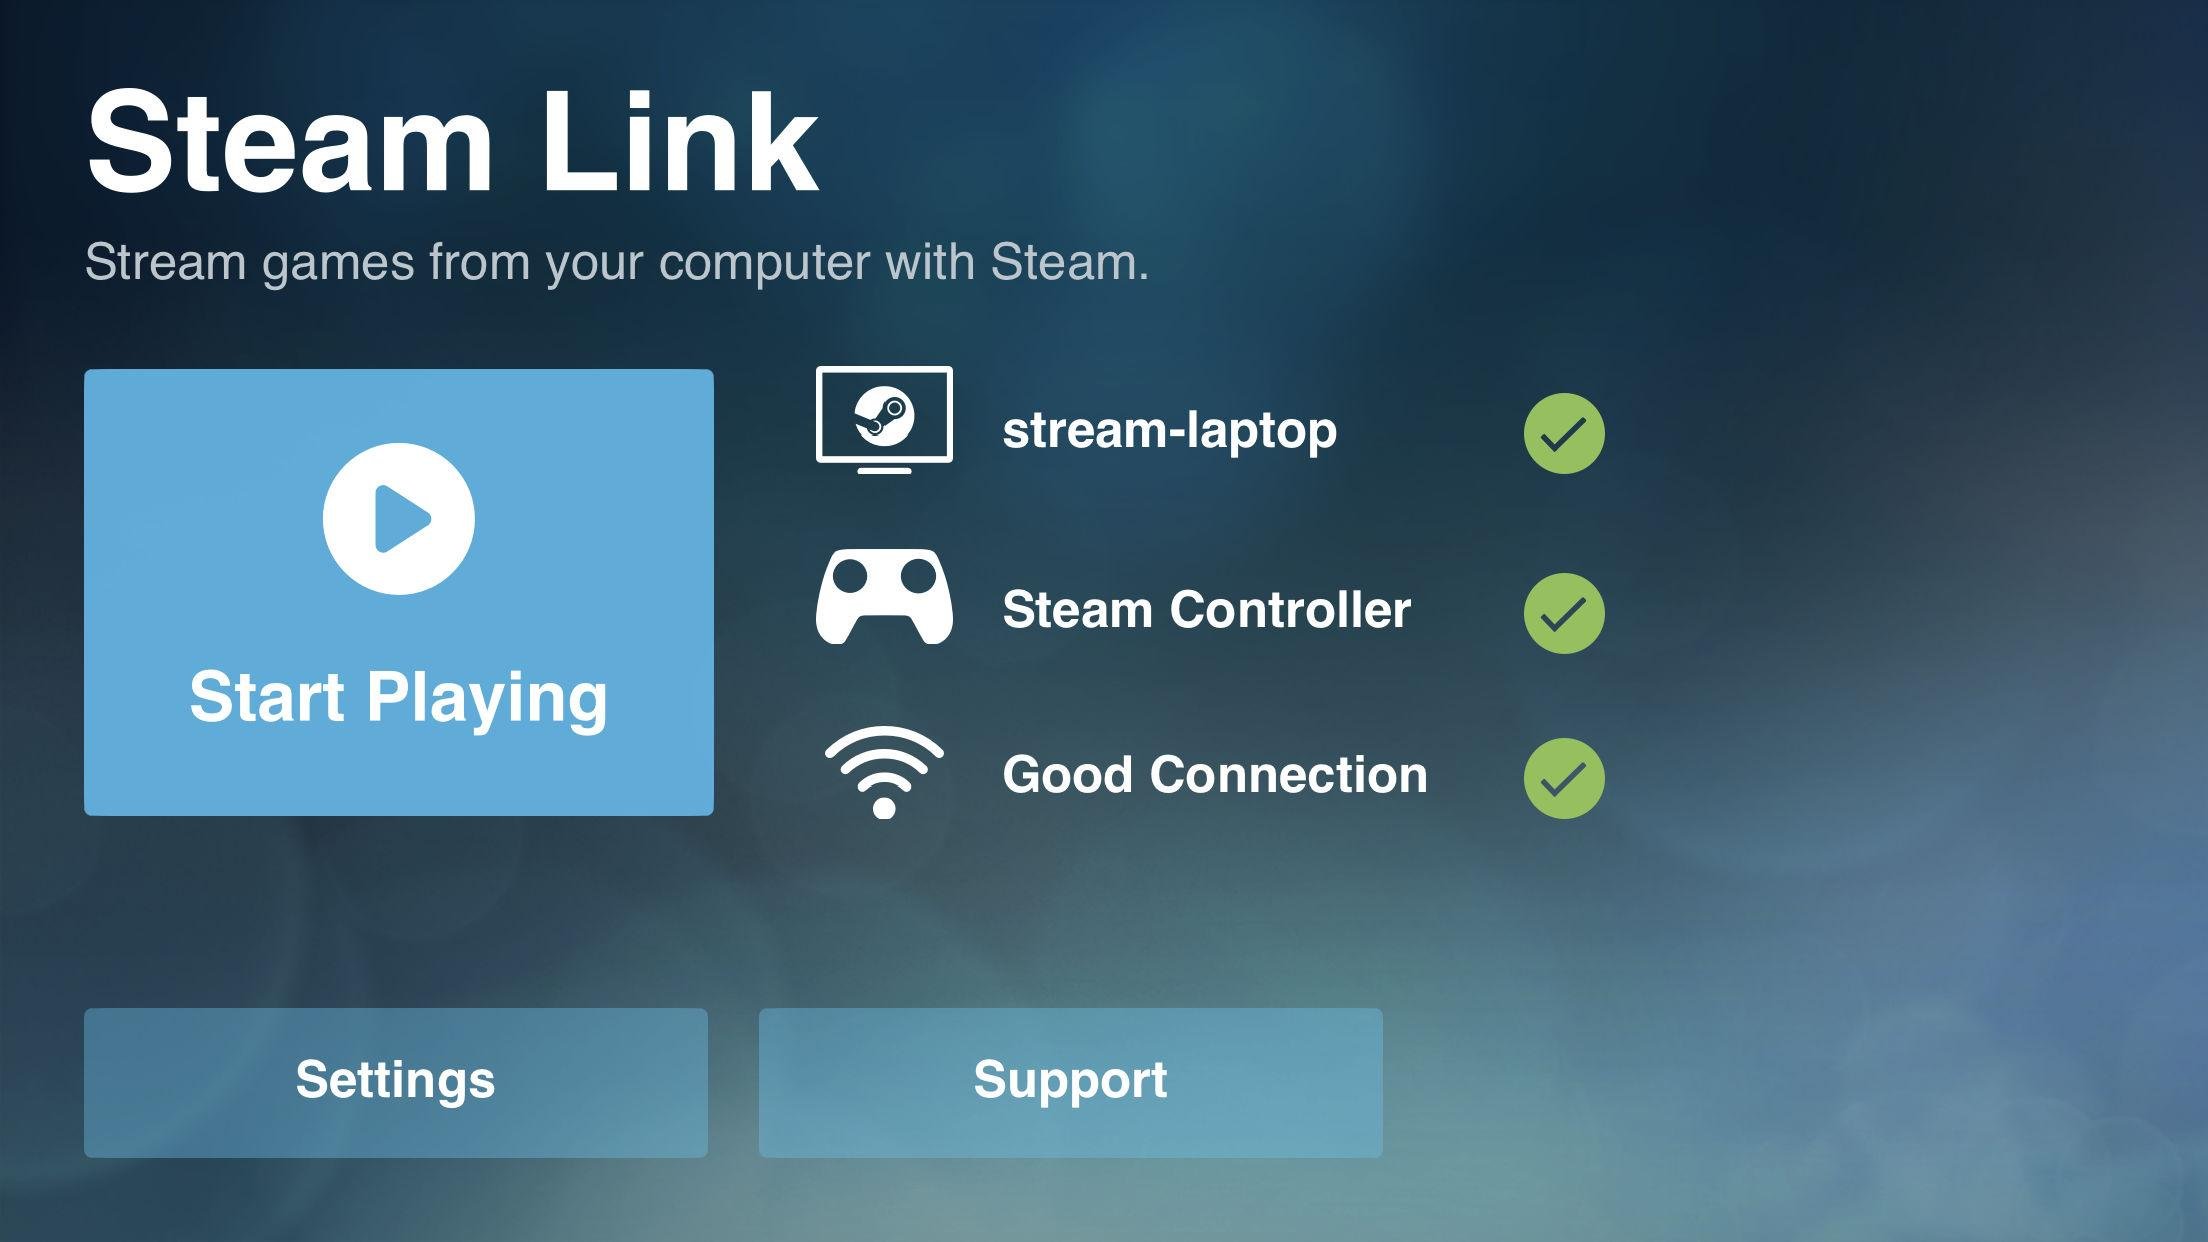 يضيف "Steam Link" الجديد دعمًا لوظائف لوحة المفاتيح والماوس ، وتشغيل الموسيقى أثناء البث ، والمزيد على iOS 80